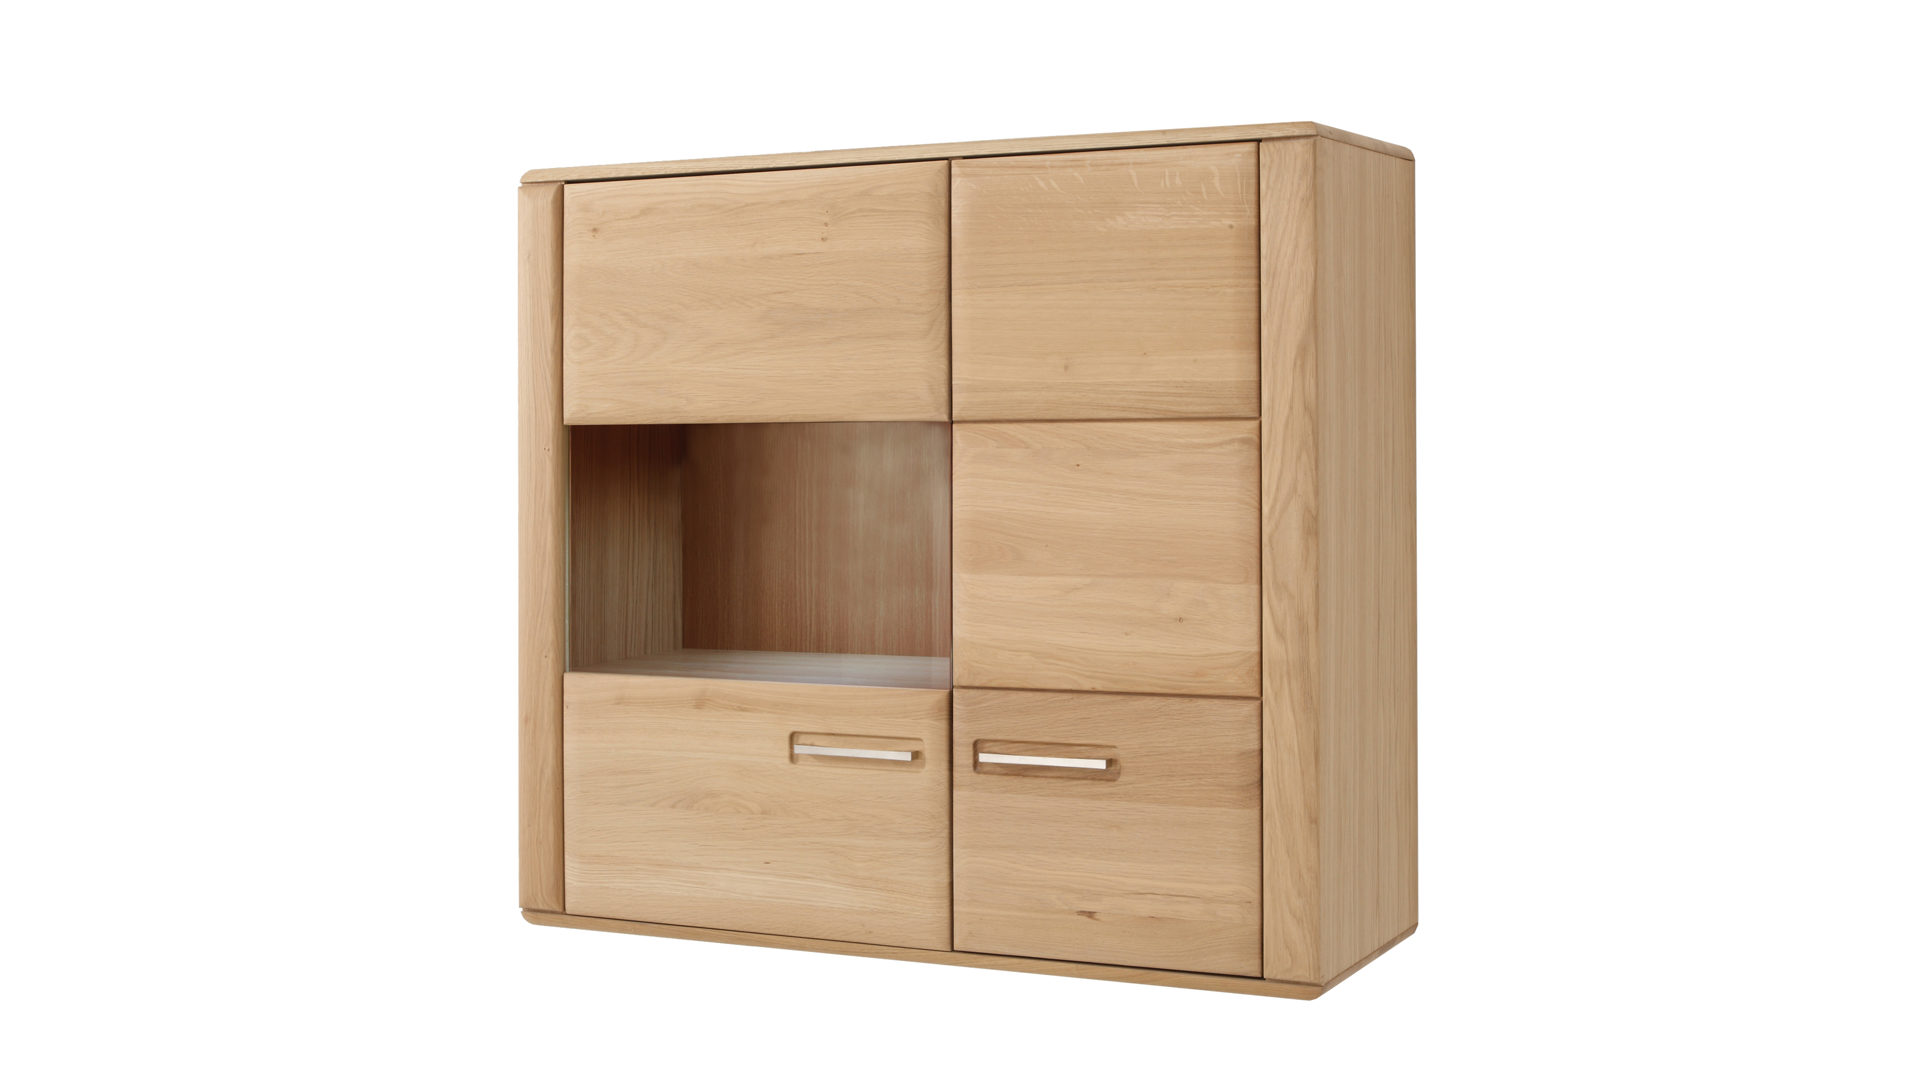 Hängeschrank Mca furniture aus Holz in Holzfarben Hängevitrine bzw. Hängeschrank Bianco geölte Eiche – zwei Türen